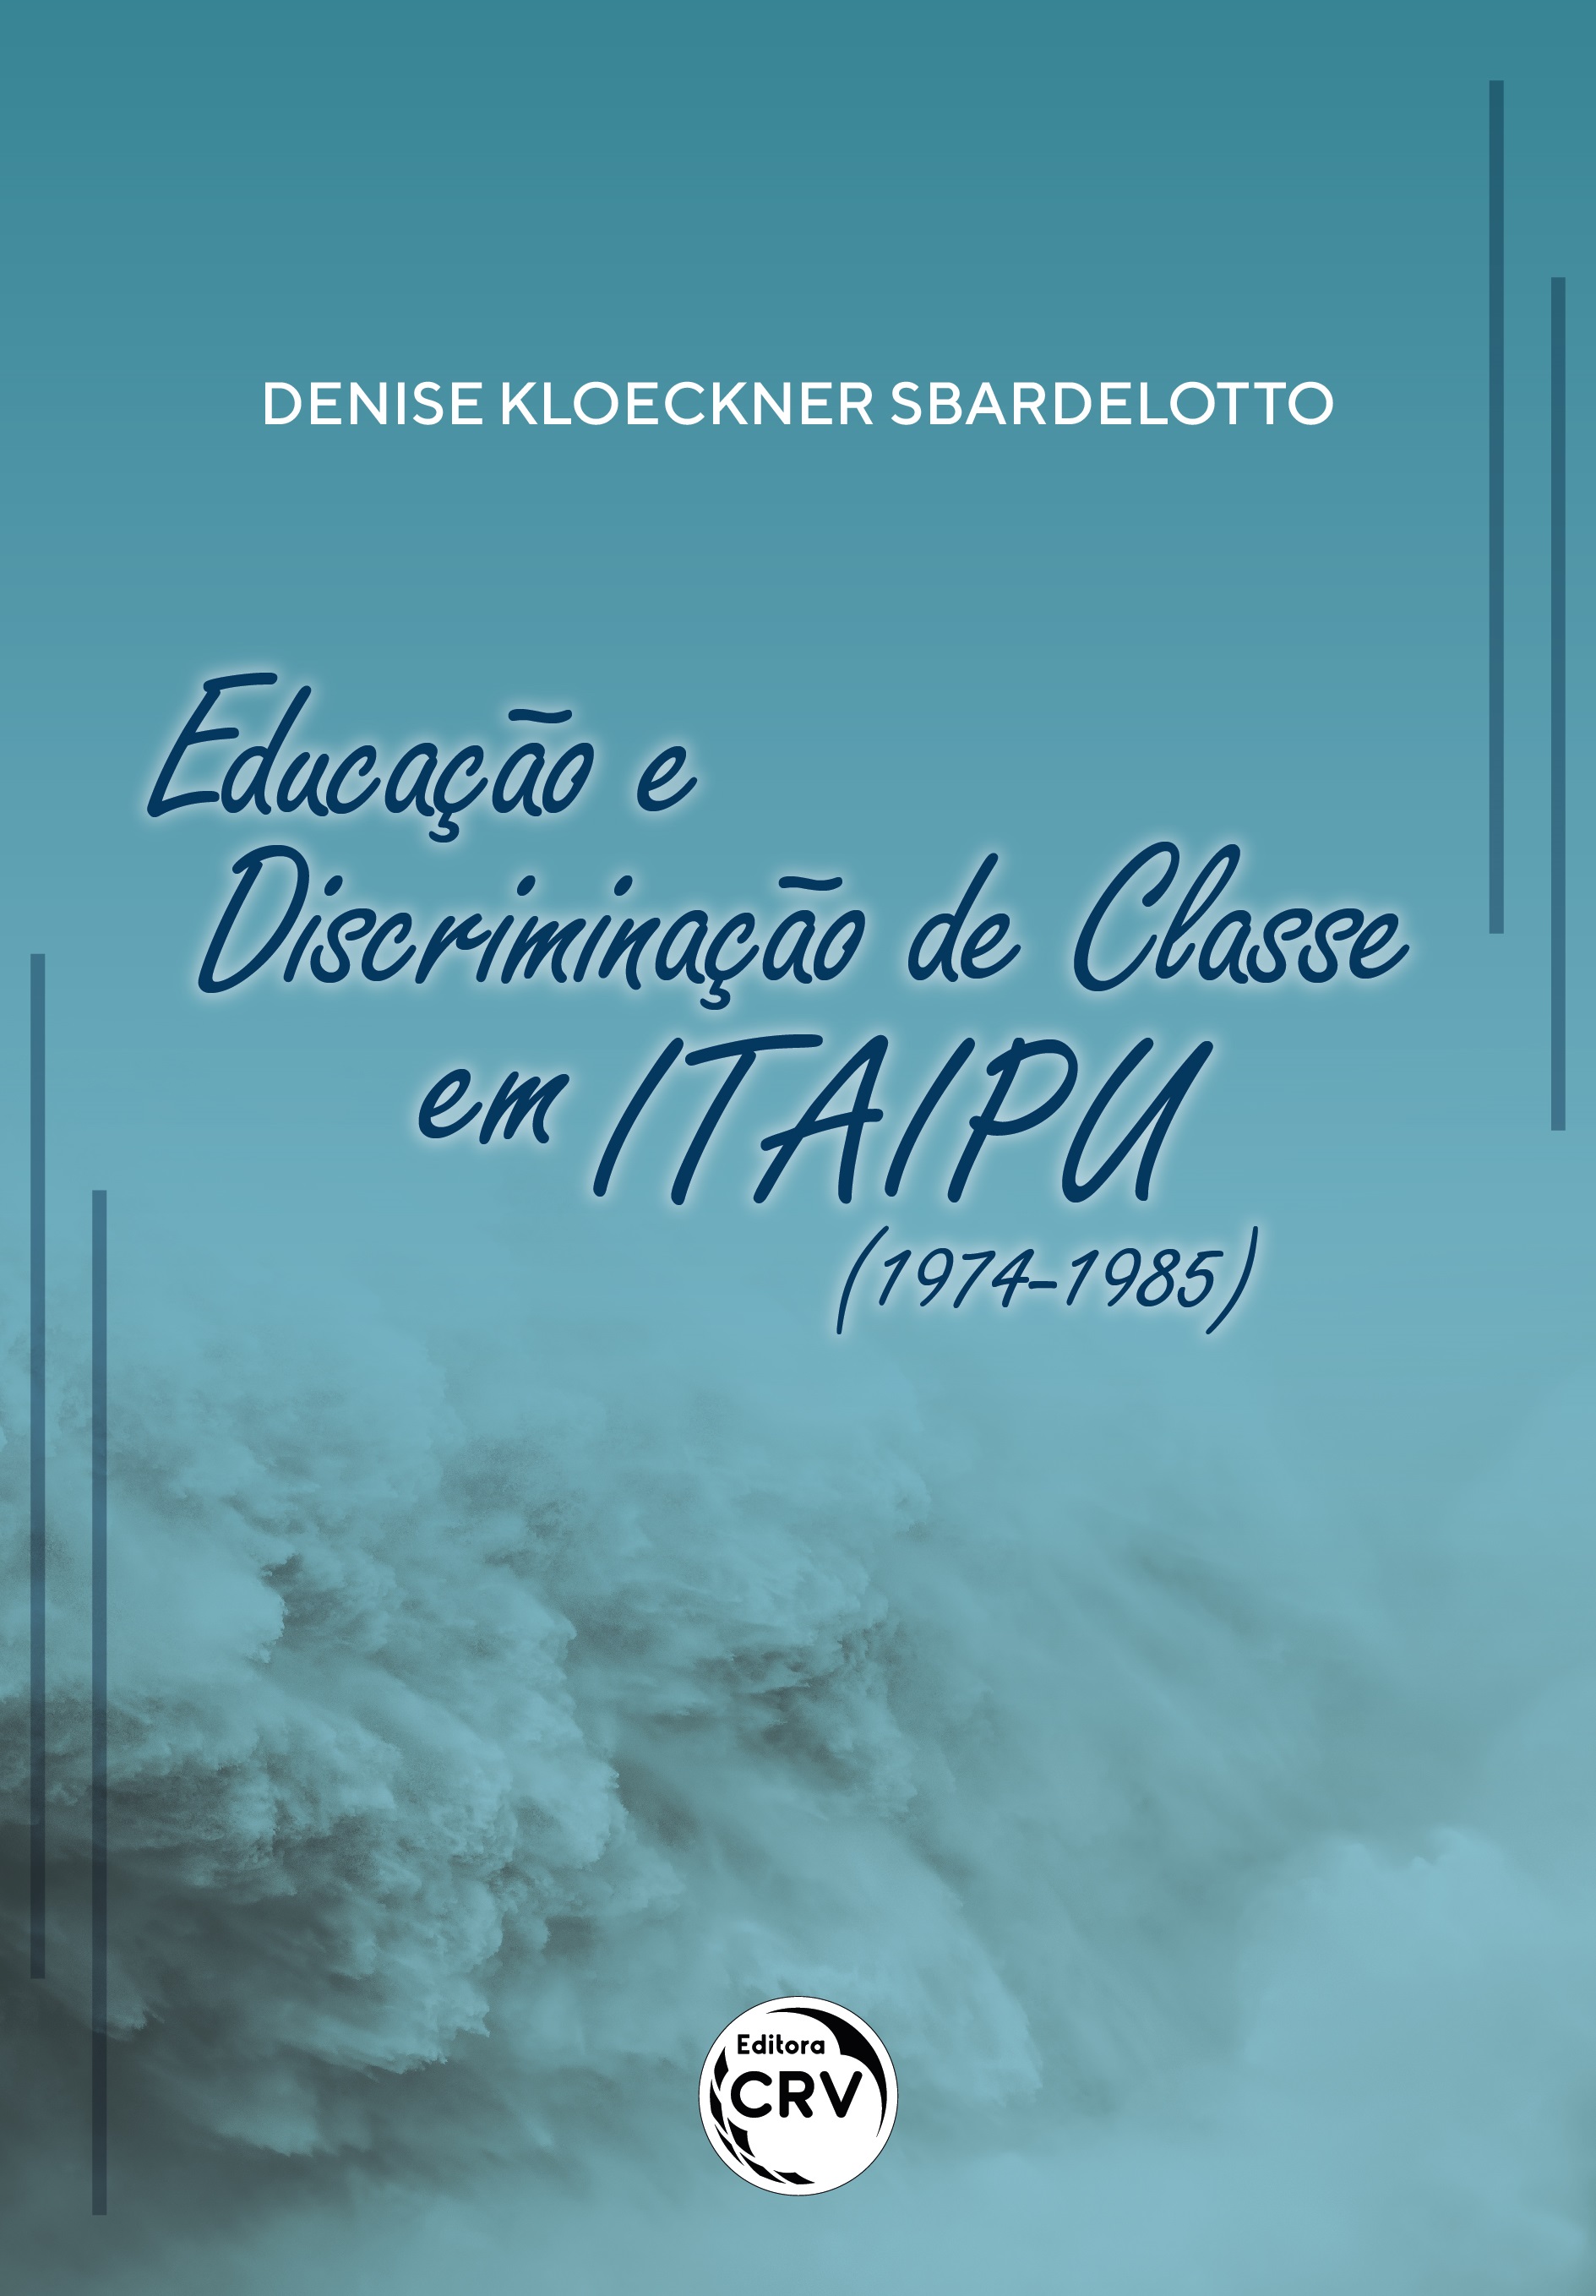 Capa do livro: EDUCAÇÃO E DISCRIMINAÇÃO DE CLASSE EM ITAIPU (1974-1985)